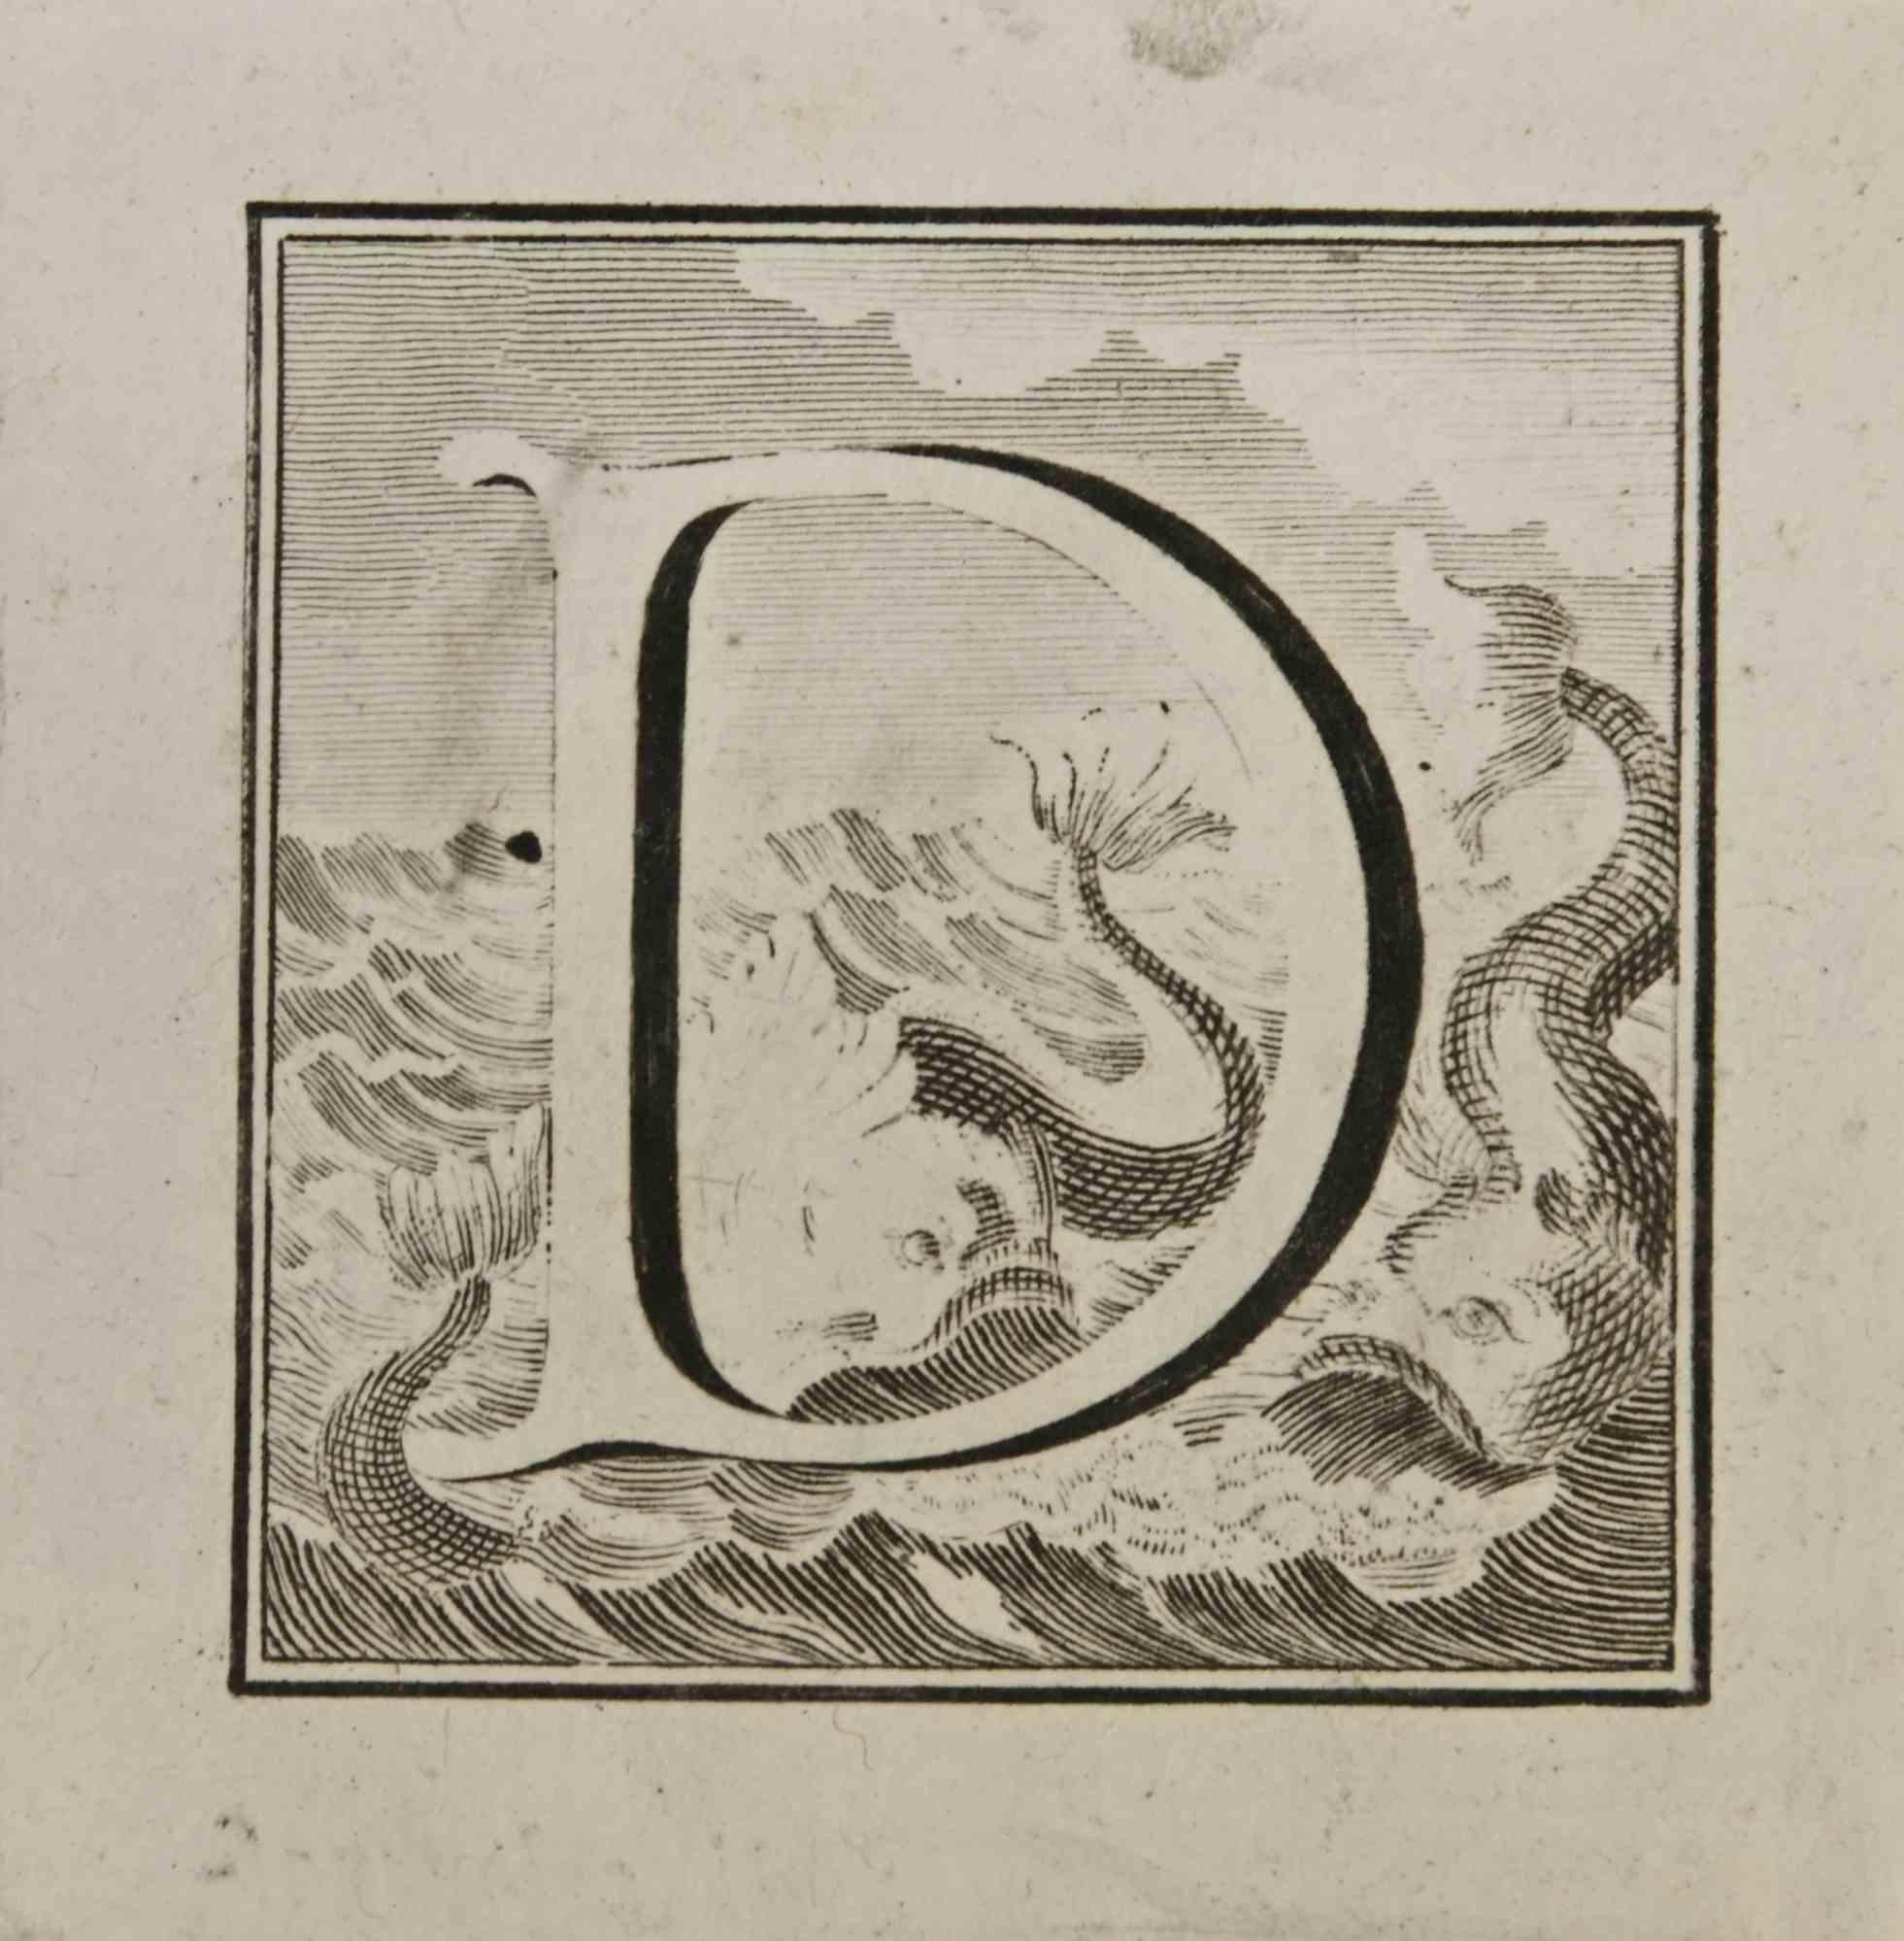 Lettre de l'alphabet D,  de la série "Antiquités d'Herculanum", est une gravure sur papier réalisée par Luigi Vanvitelli au 18ème siècle.

Bonnes conditions.

La gravure appartient à la suite d'estampes "Antiquités d'Herculanum exposées" (titre